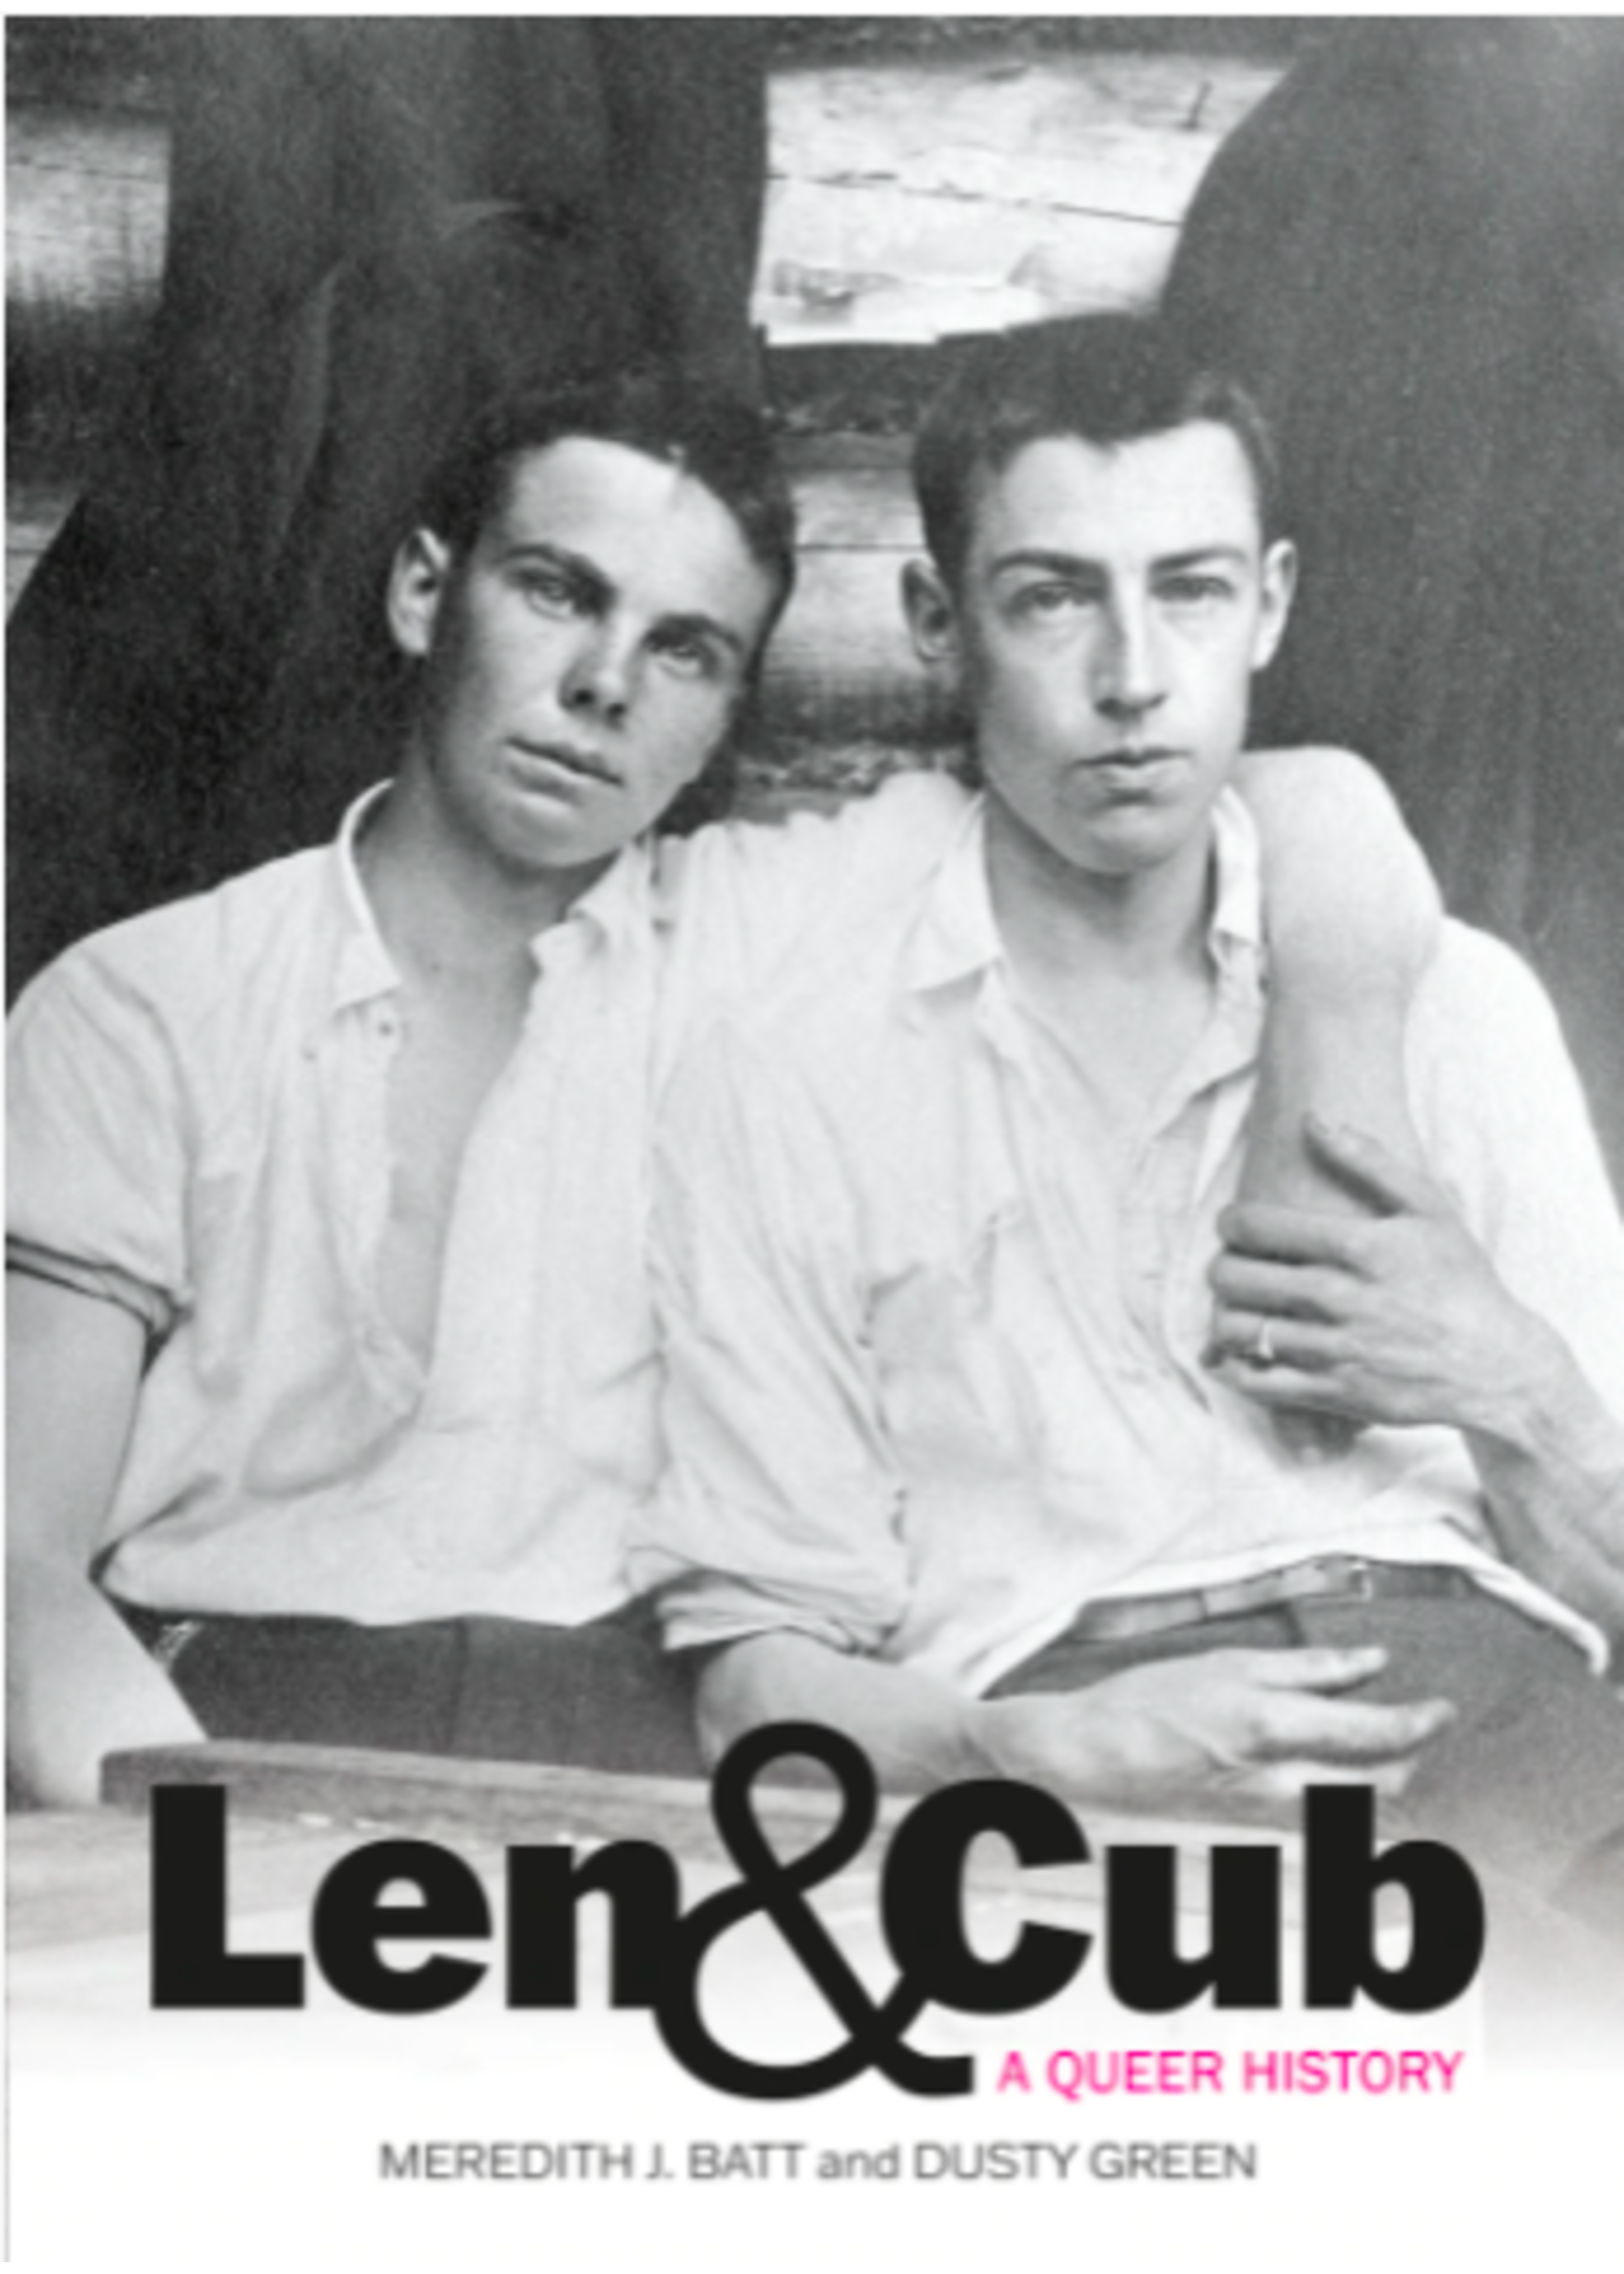 Len & Cub by Meredith J. Batt & Dusty Green